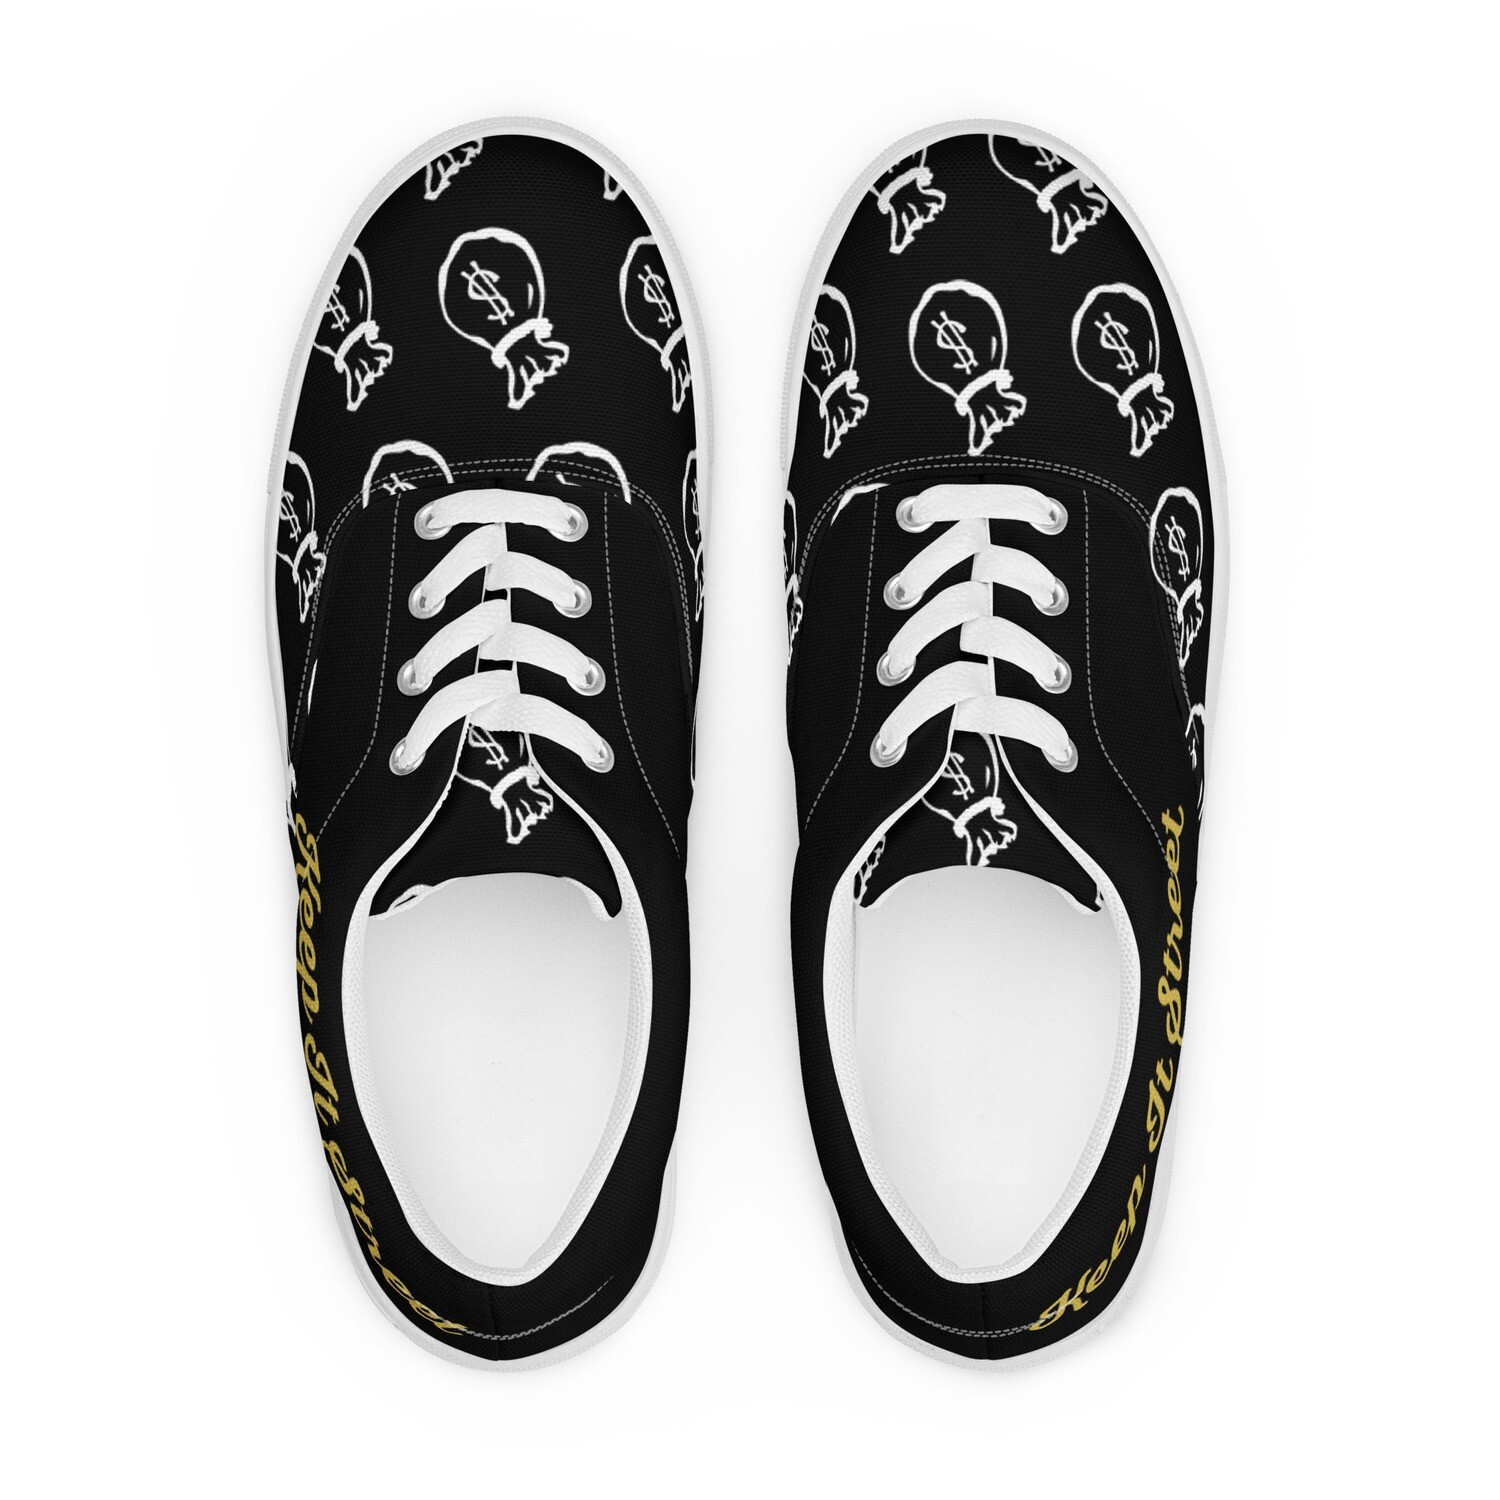 Men’s lace-up canvas money bag shoes